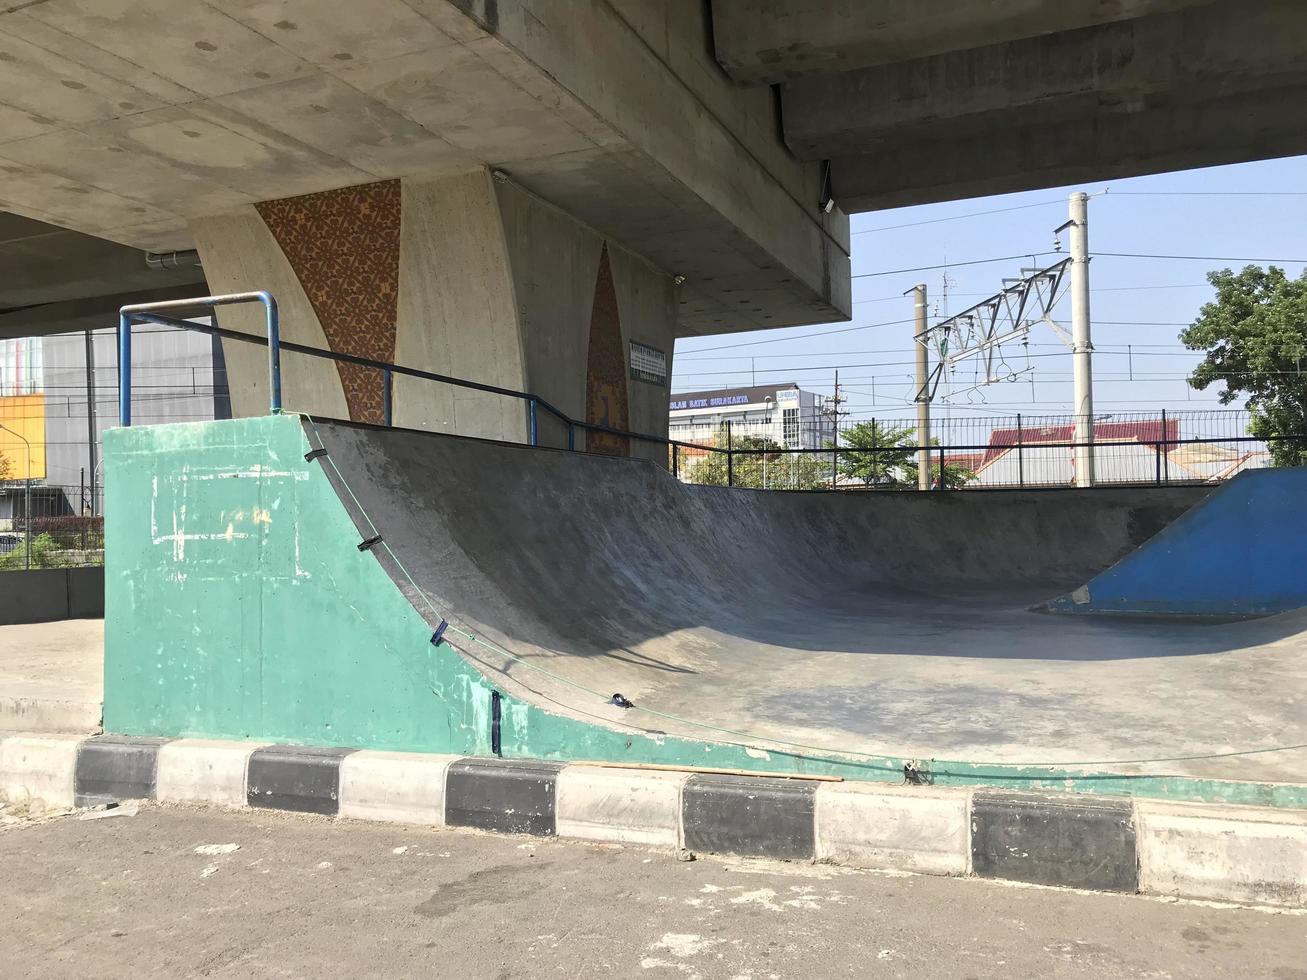 skatepark vazio no parque público da cidade foto